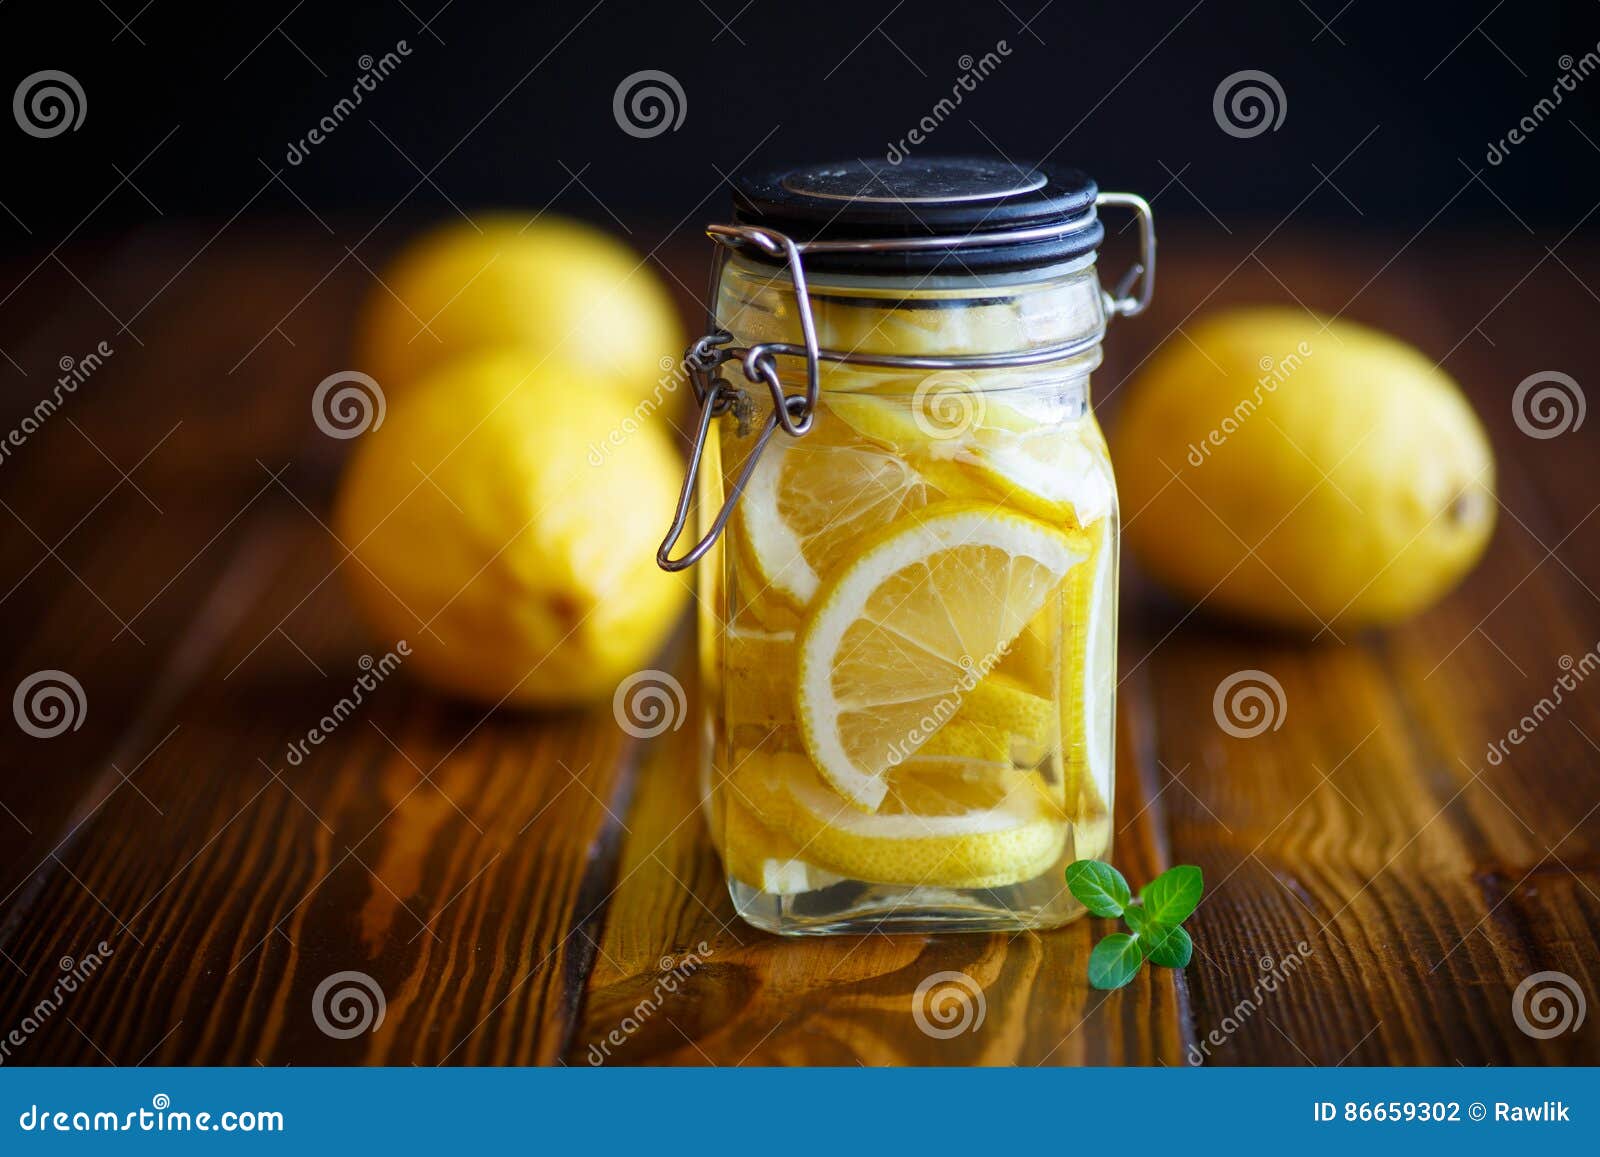 In Essig Eingelegte Zitronen Im Zuckersirup Stockfoto - Bild von ...